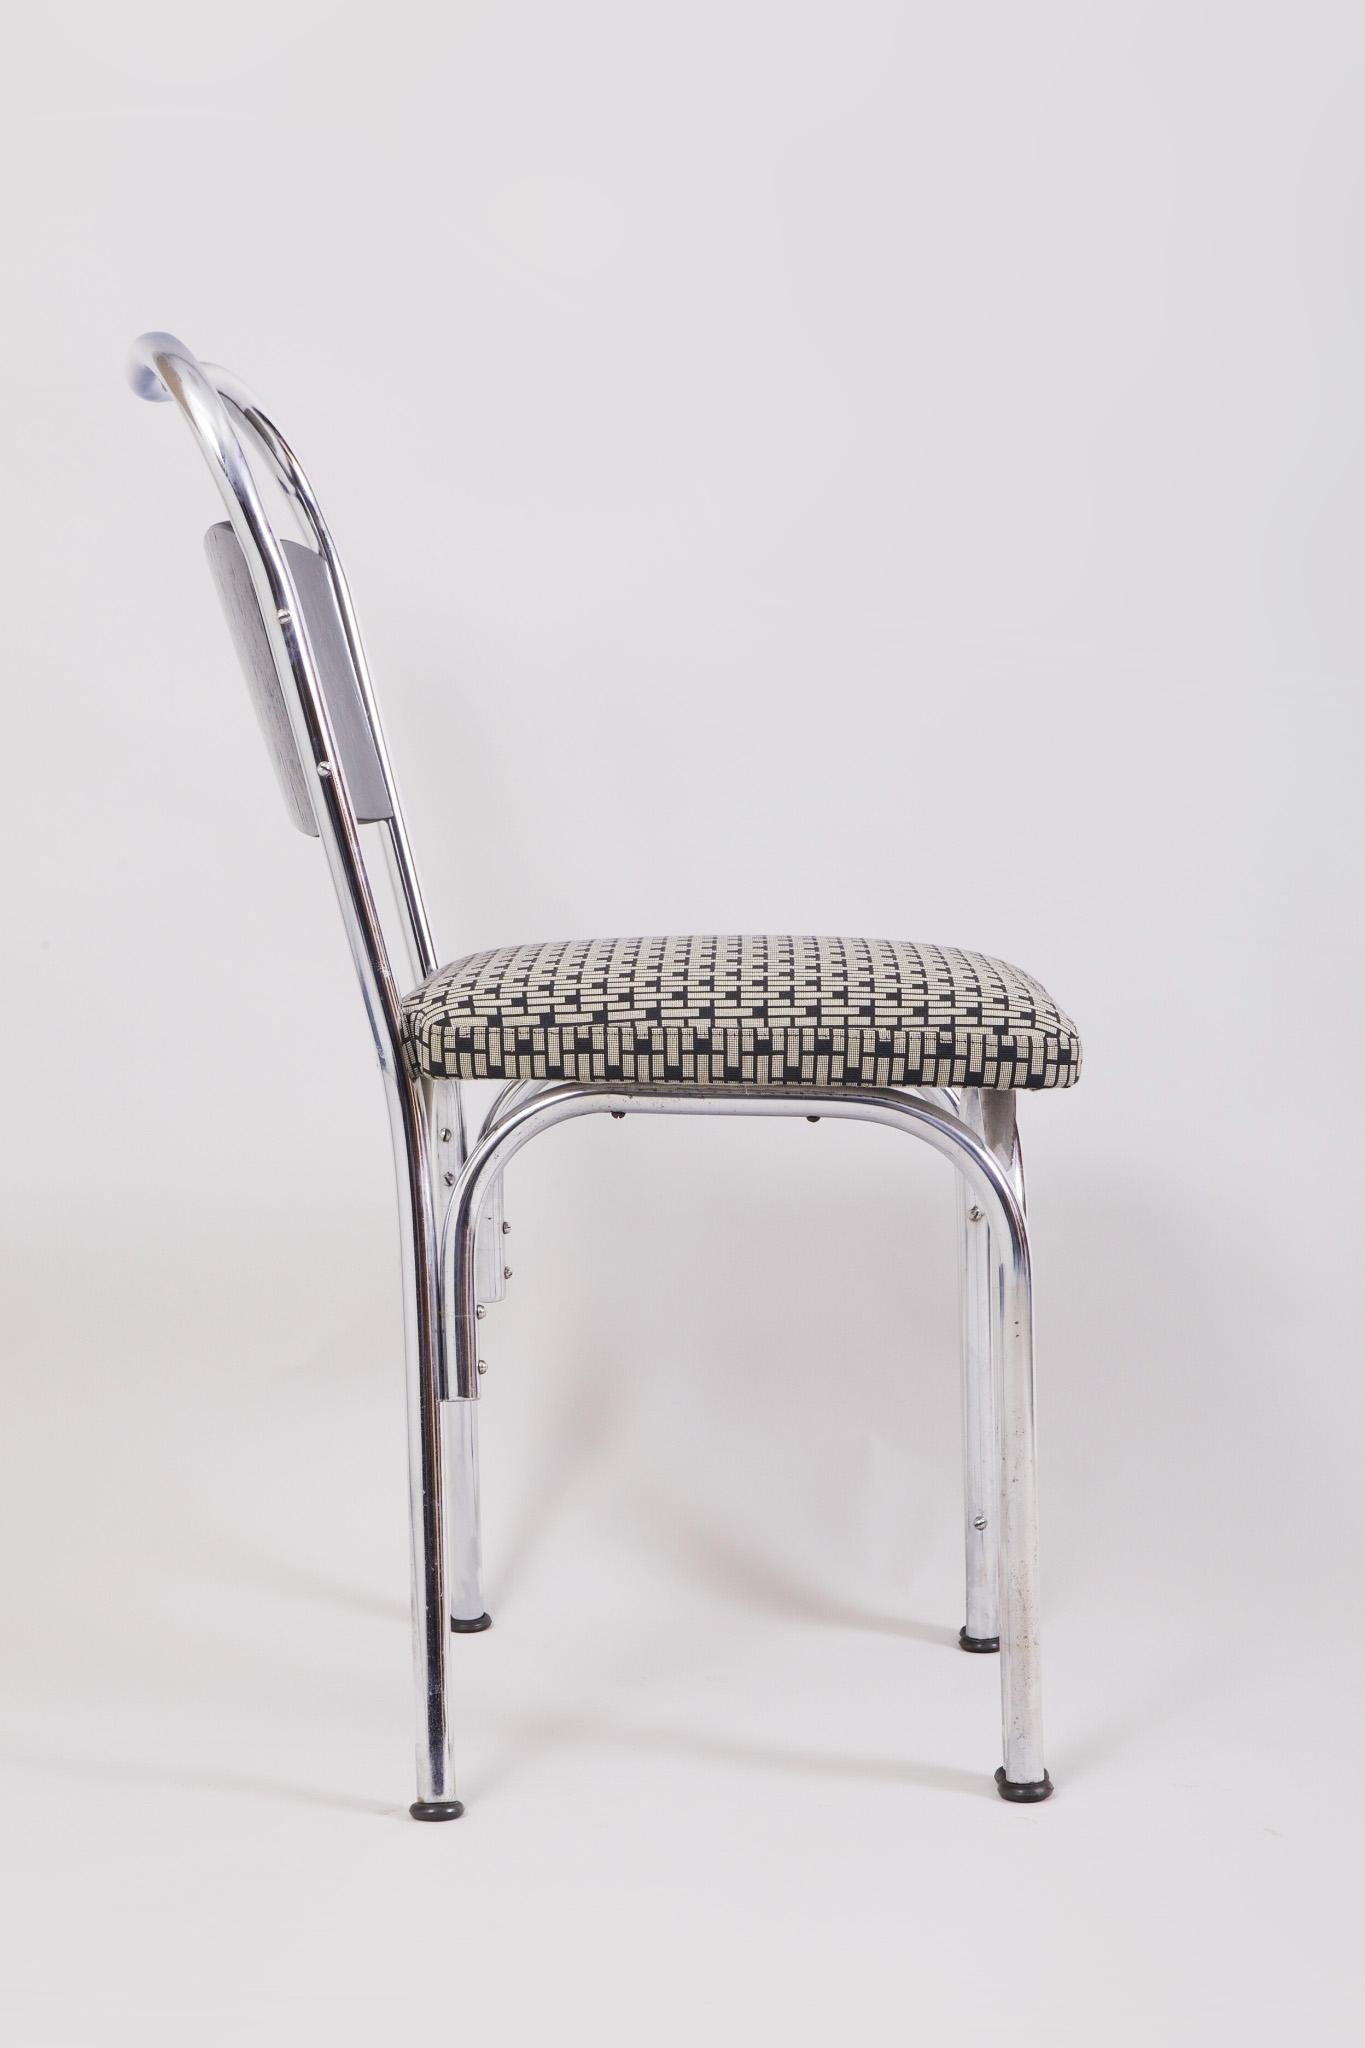 Fabriqué en Allemagne dans les années 1930 et entièrement restauré et retapissé par notre équipe.
Les chaises appartiennent au style Bauhaus
Ils sont fabriqués en chêne et en acier chromé
Tapissé de tissu Backhausen.
L'ensemble est livré avec